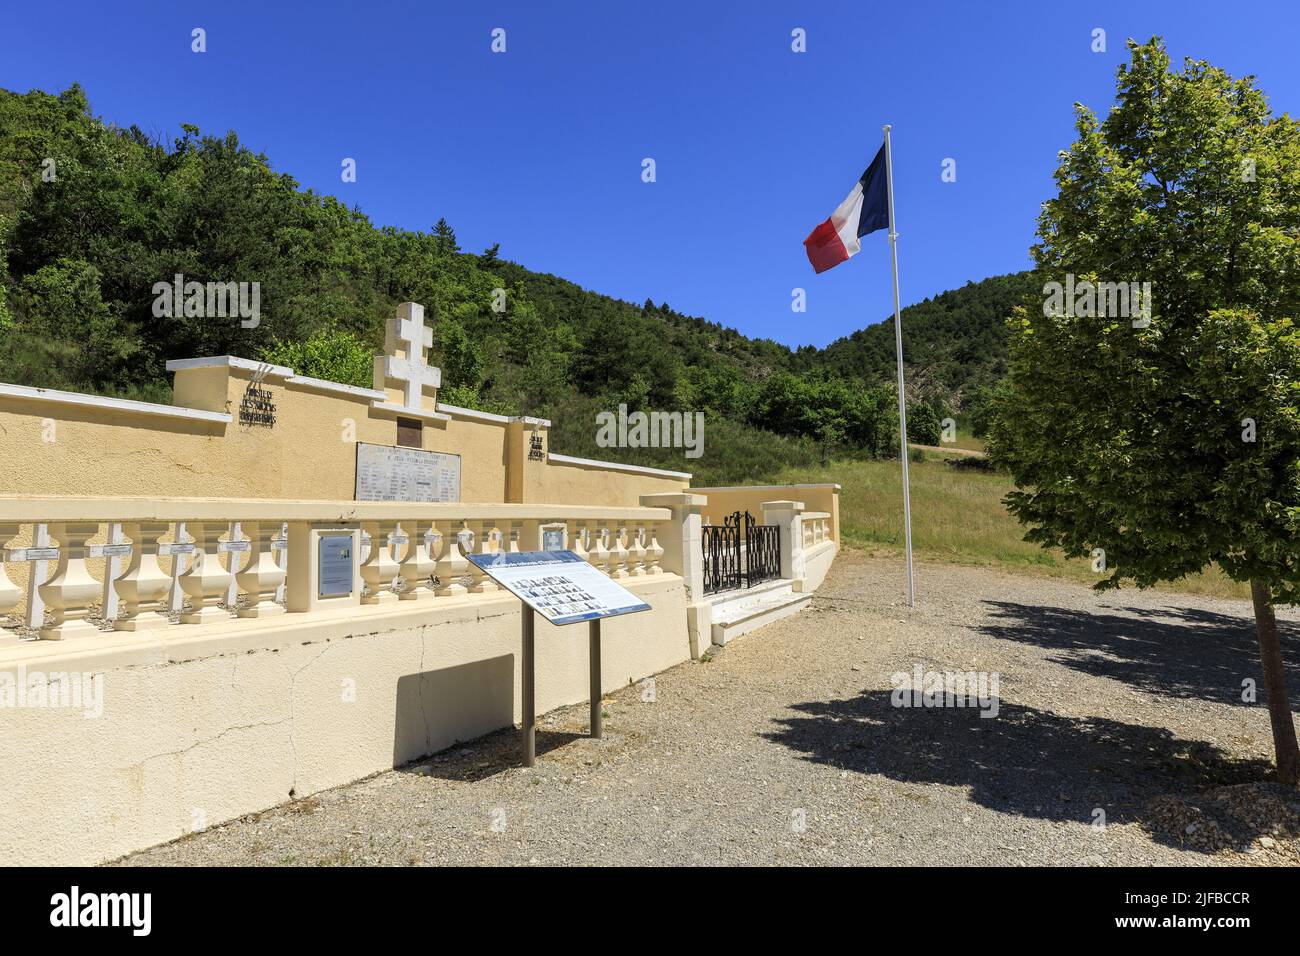 France, Drôme, parc naturel régional des Baronnies provençales, Eygalayes, cimetière national regroupant 35 tombes des guérilleros de Ventoux fuseilles sur 22 février 1944 Banque D'Images